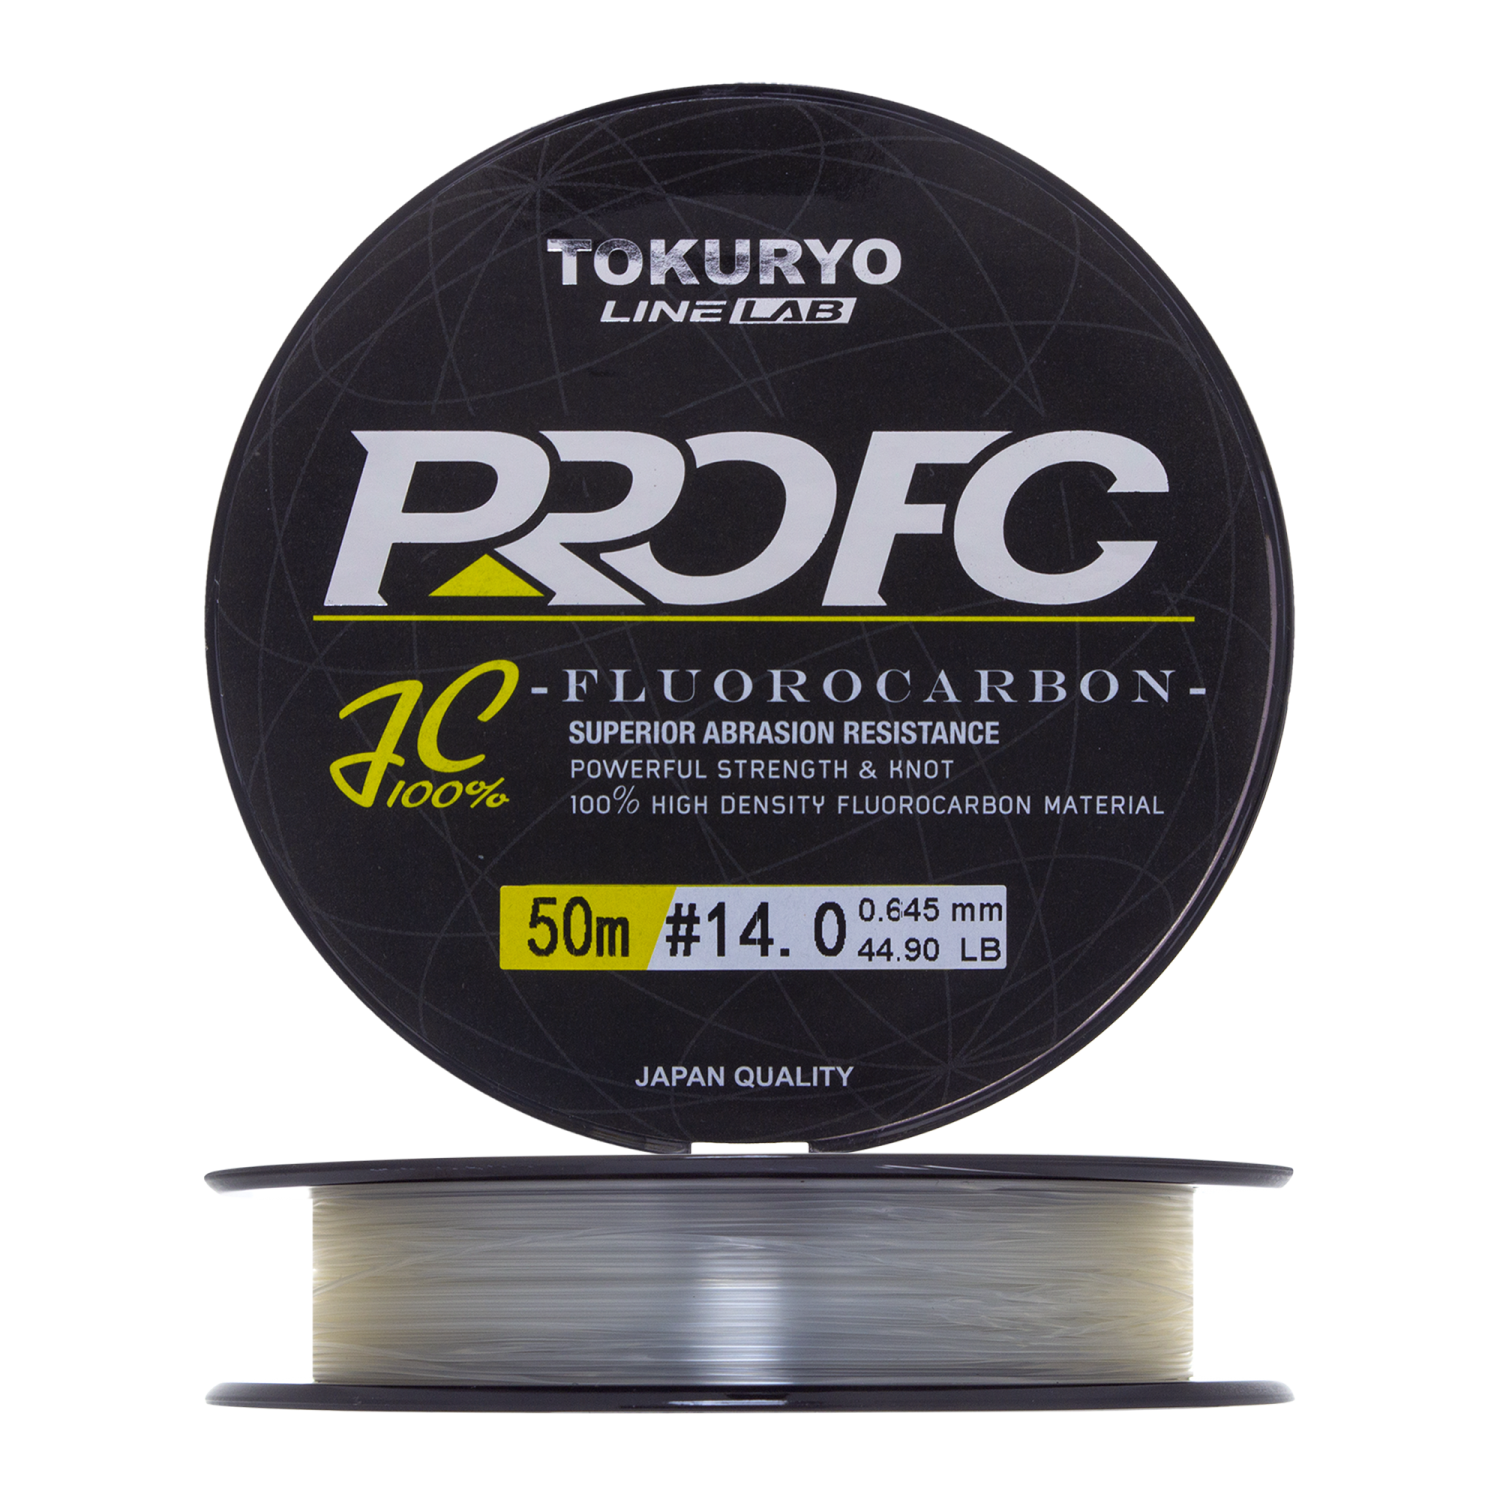 Флюорокарбон Tokuryo Fluorocarbon Pro FC #14 50м (clear)